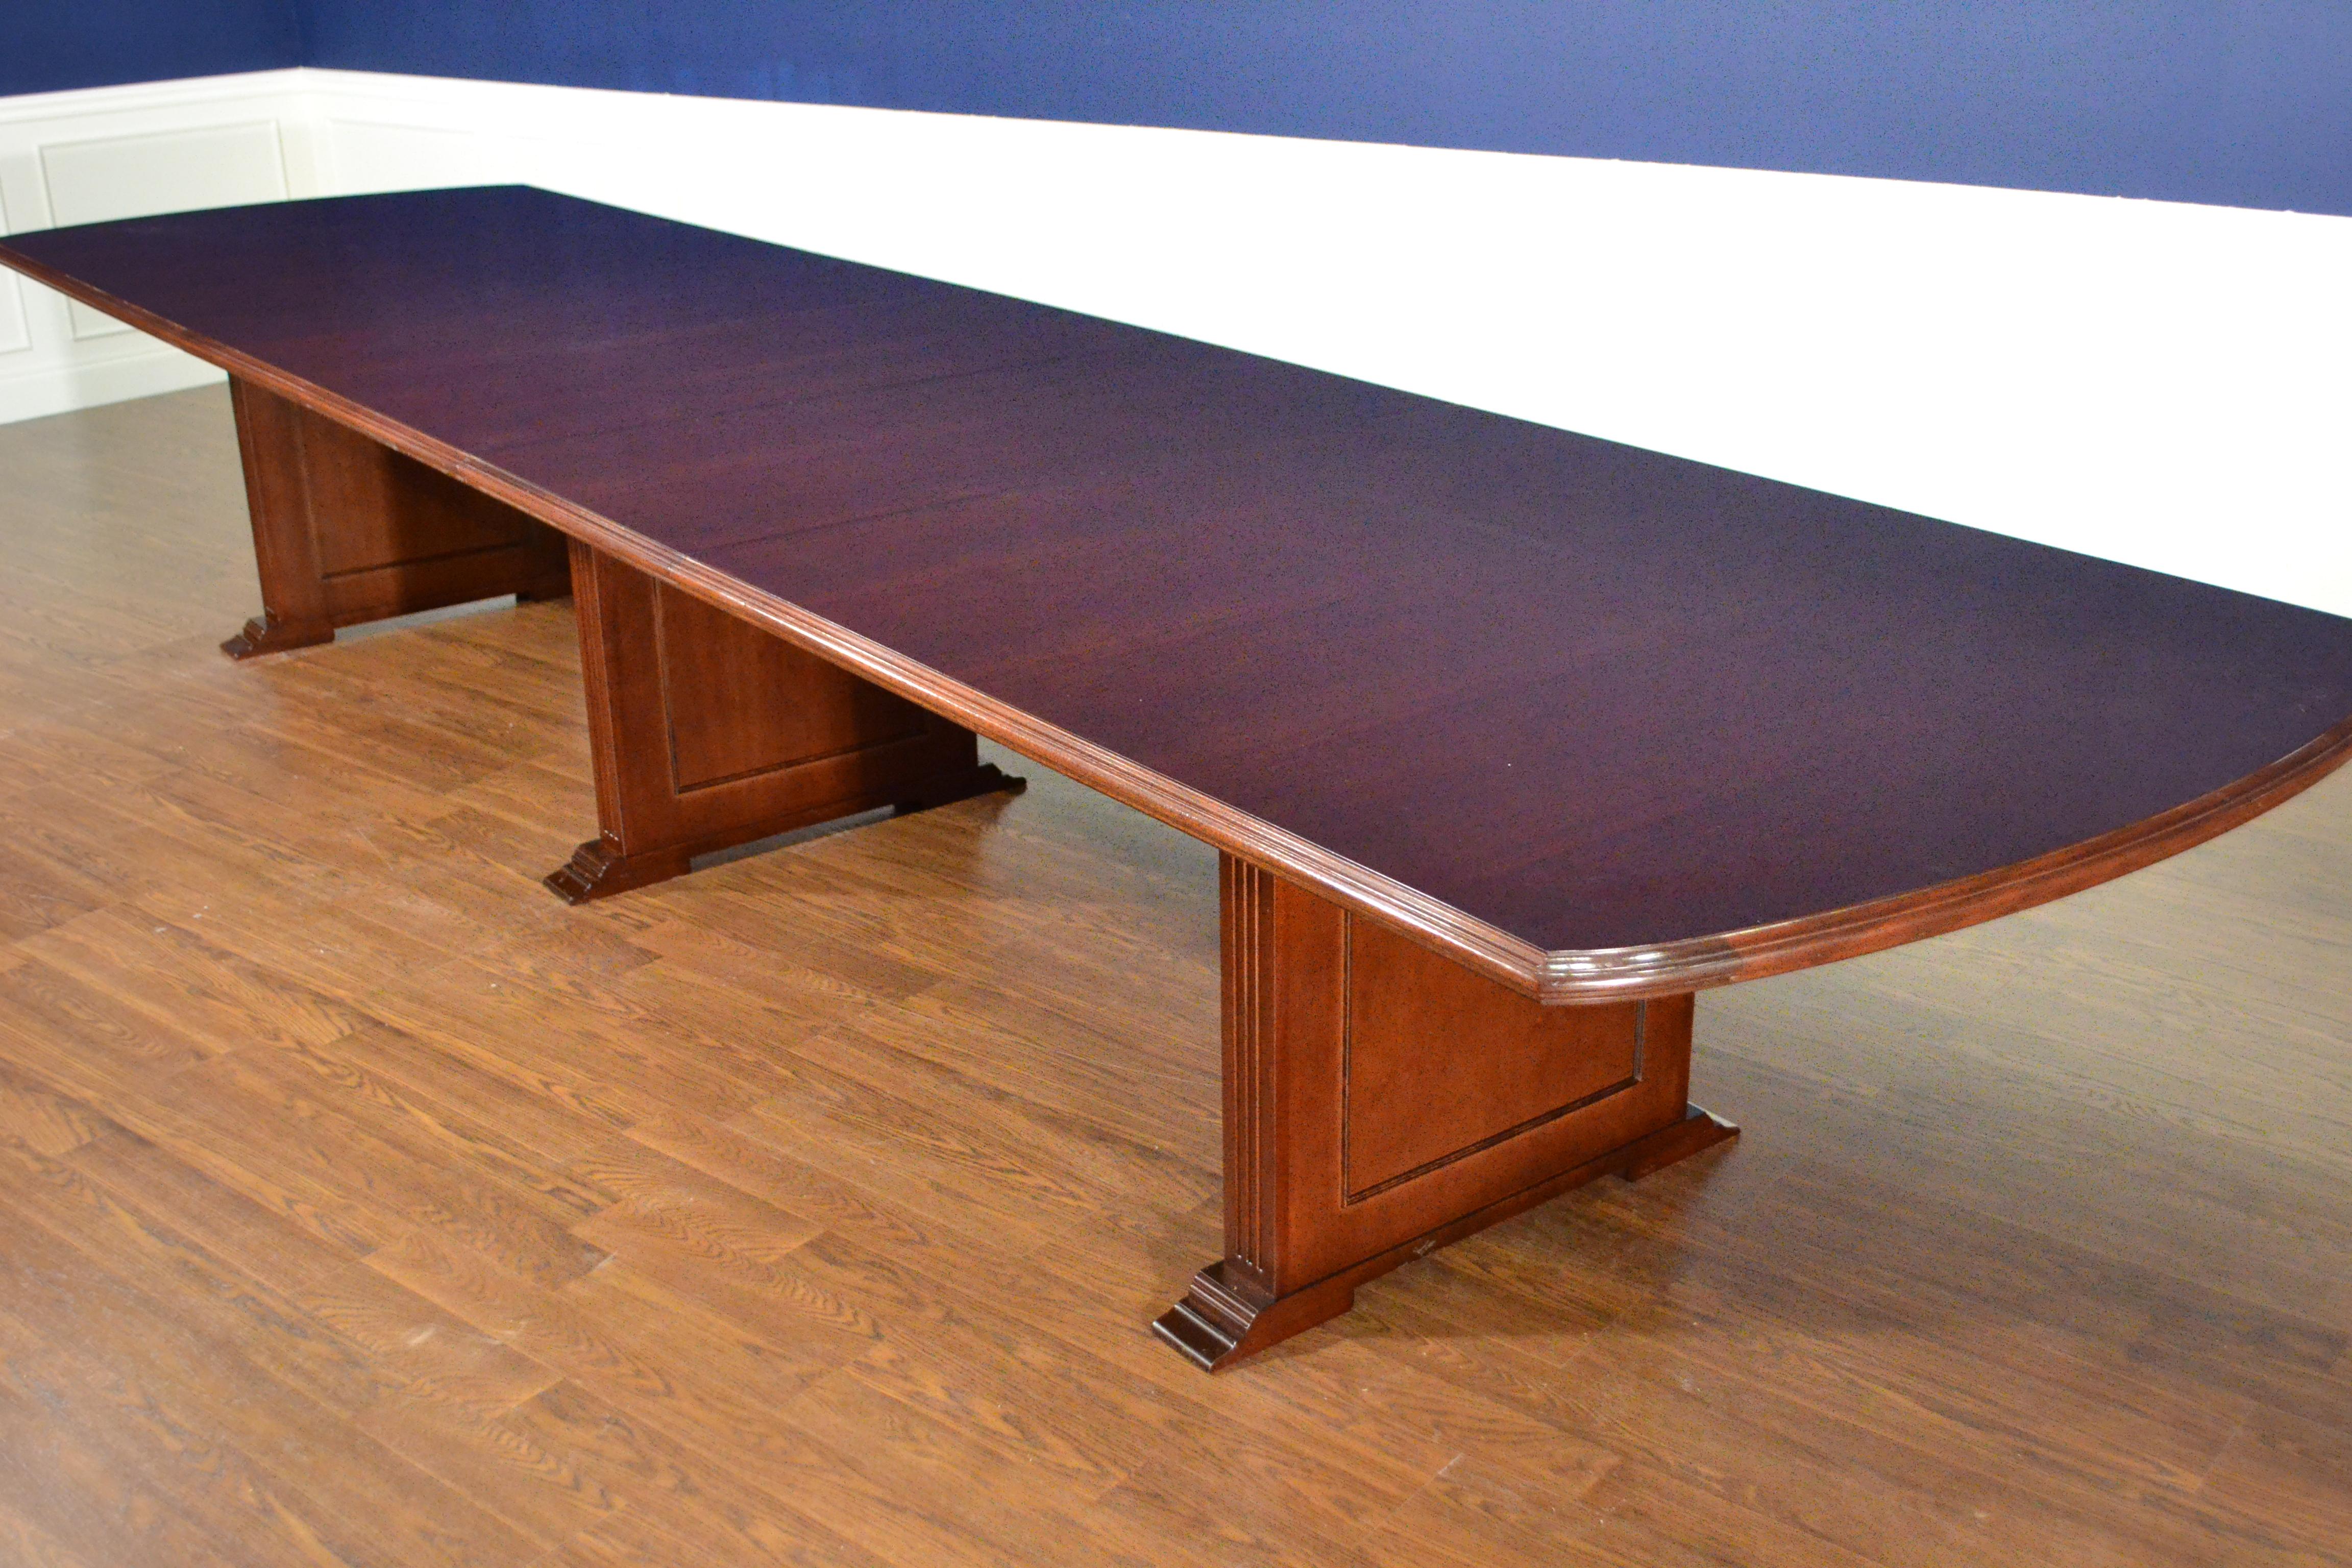 Il s'agit d'une table de conférence en acajou fabriquée sur commande dans l'atelier de Leighton Hall. Il présente un champ d'acajou cathédrale avec un bord d'acajou massif en forme d'Ogee. Il comporte trois socles de style 